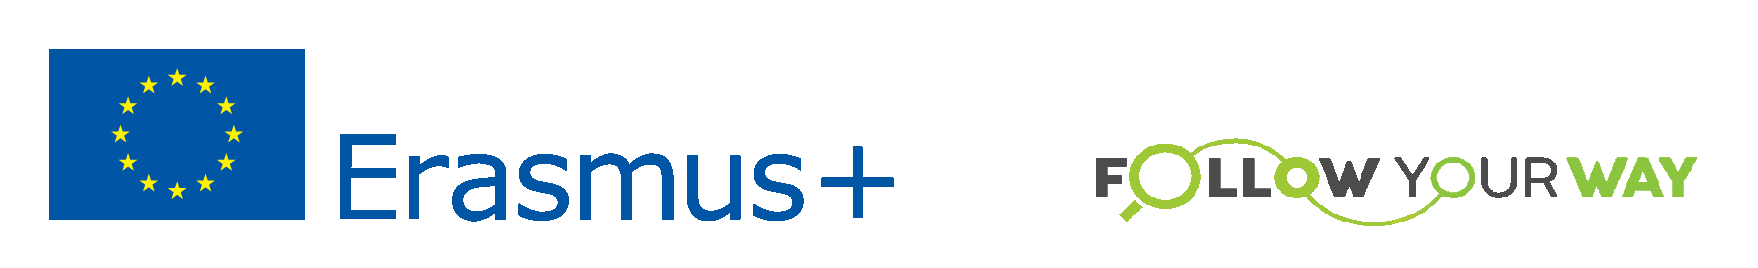 Logo bendras transp